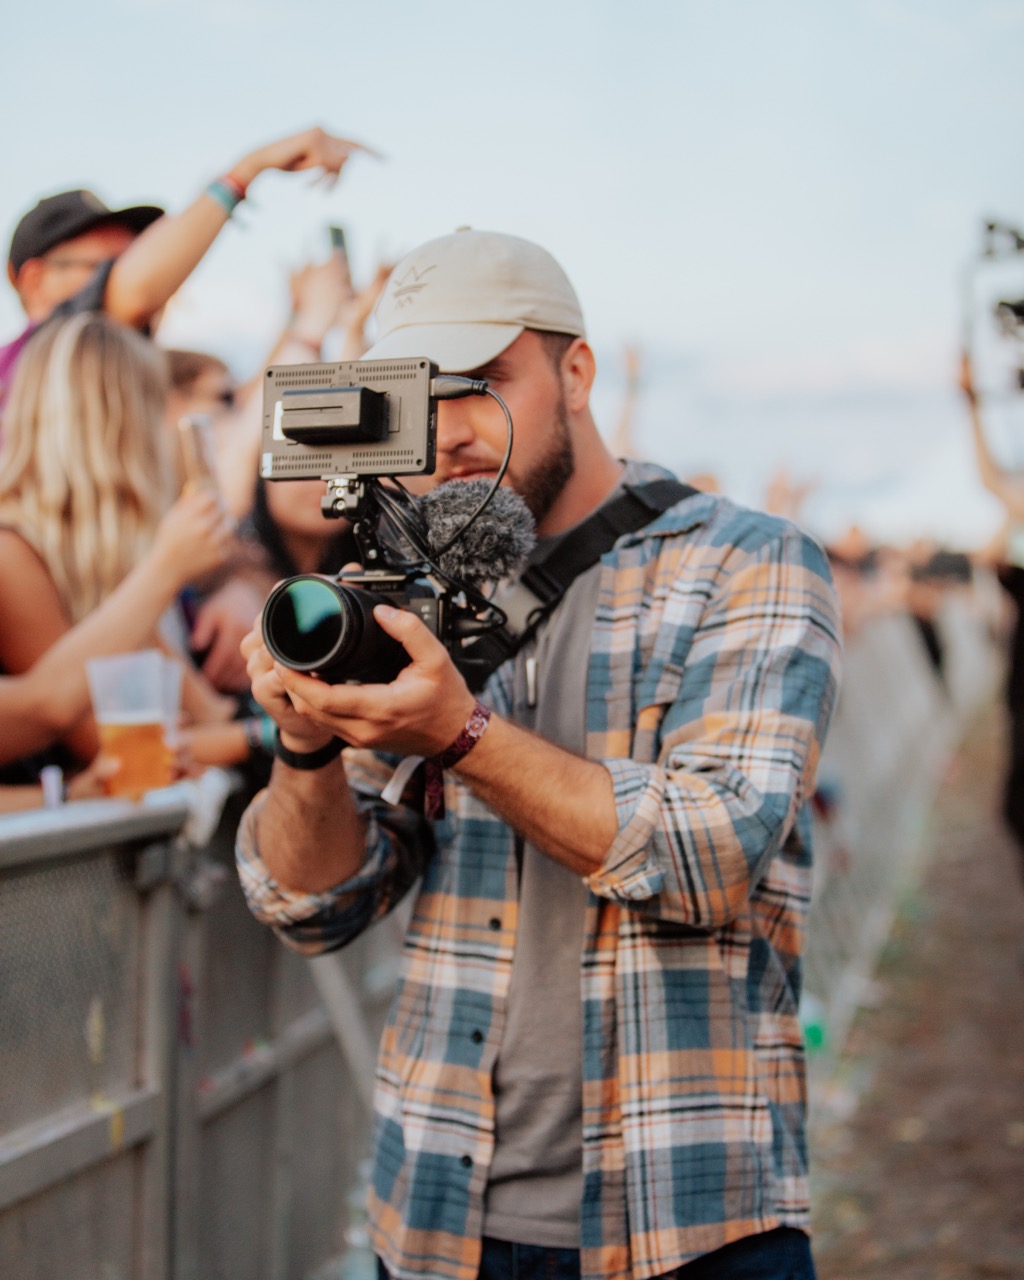 Ein Mitgleid unseres Teams filmt einen Act auf einem Festival. In der Hand hat er eine geriggte Kamera, mit Monitor. Das Bild ist schwarz weiß, im Hintergrund sind viele Menschen.